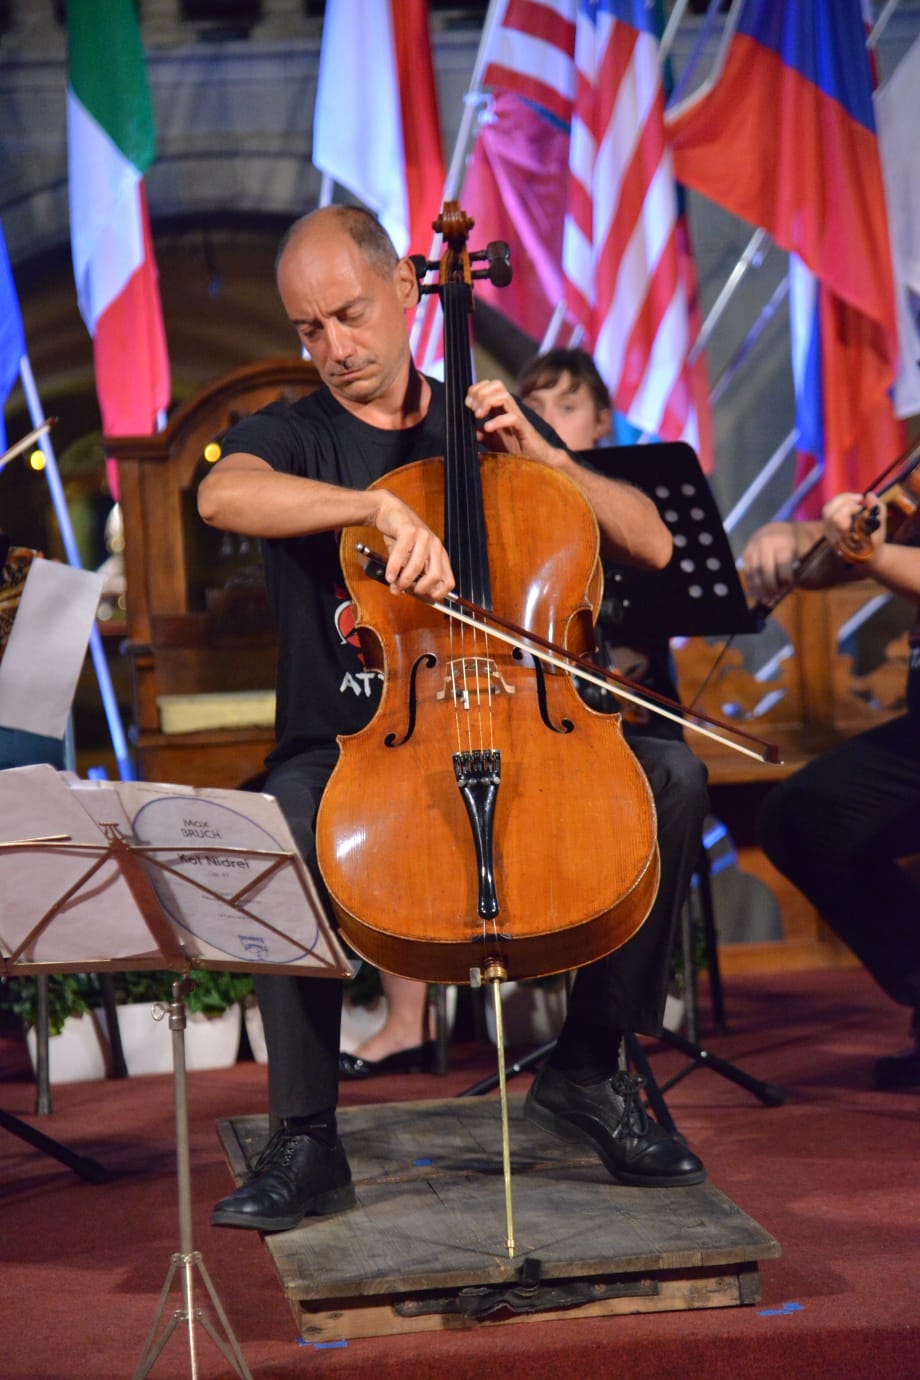 Arezzo invita i massimi esperti di musica polifonica a riflettere sulle possibilità offerte dalle nuove tecnologie digitali